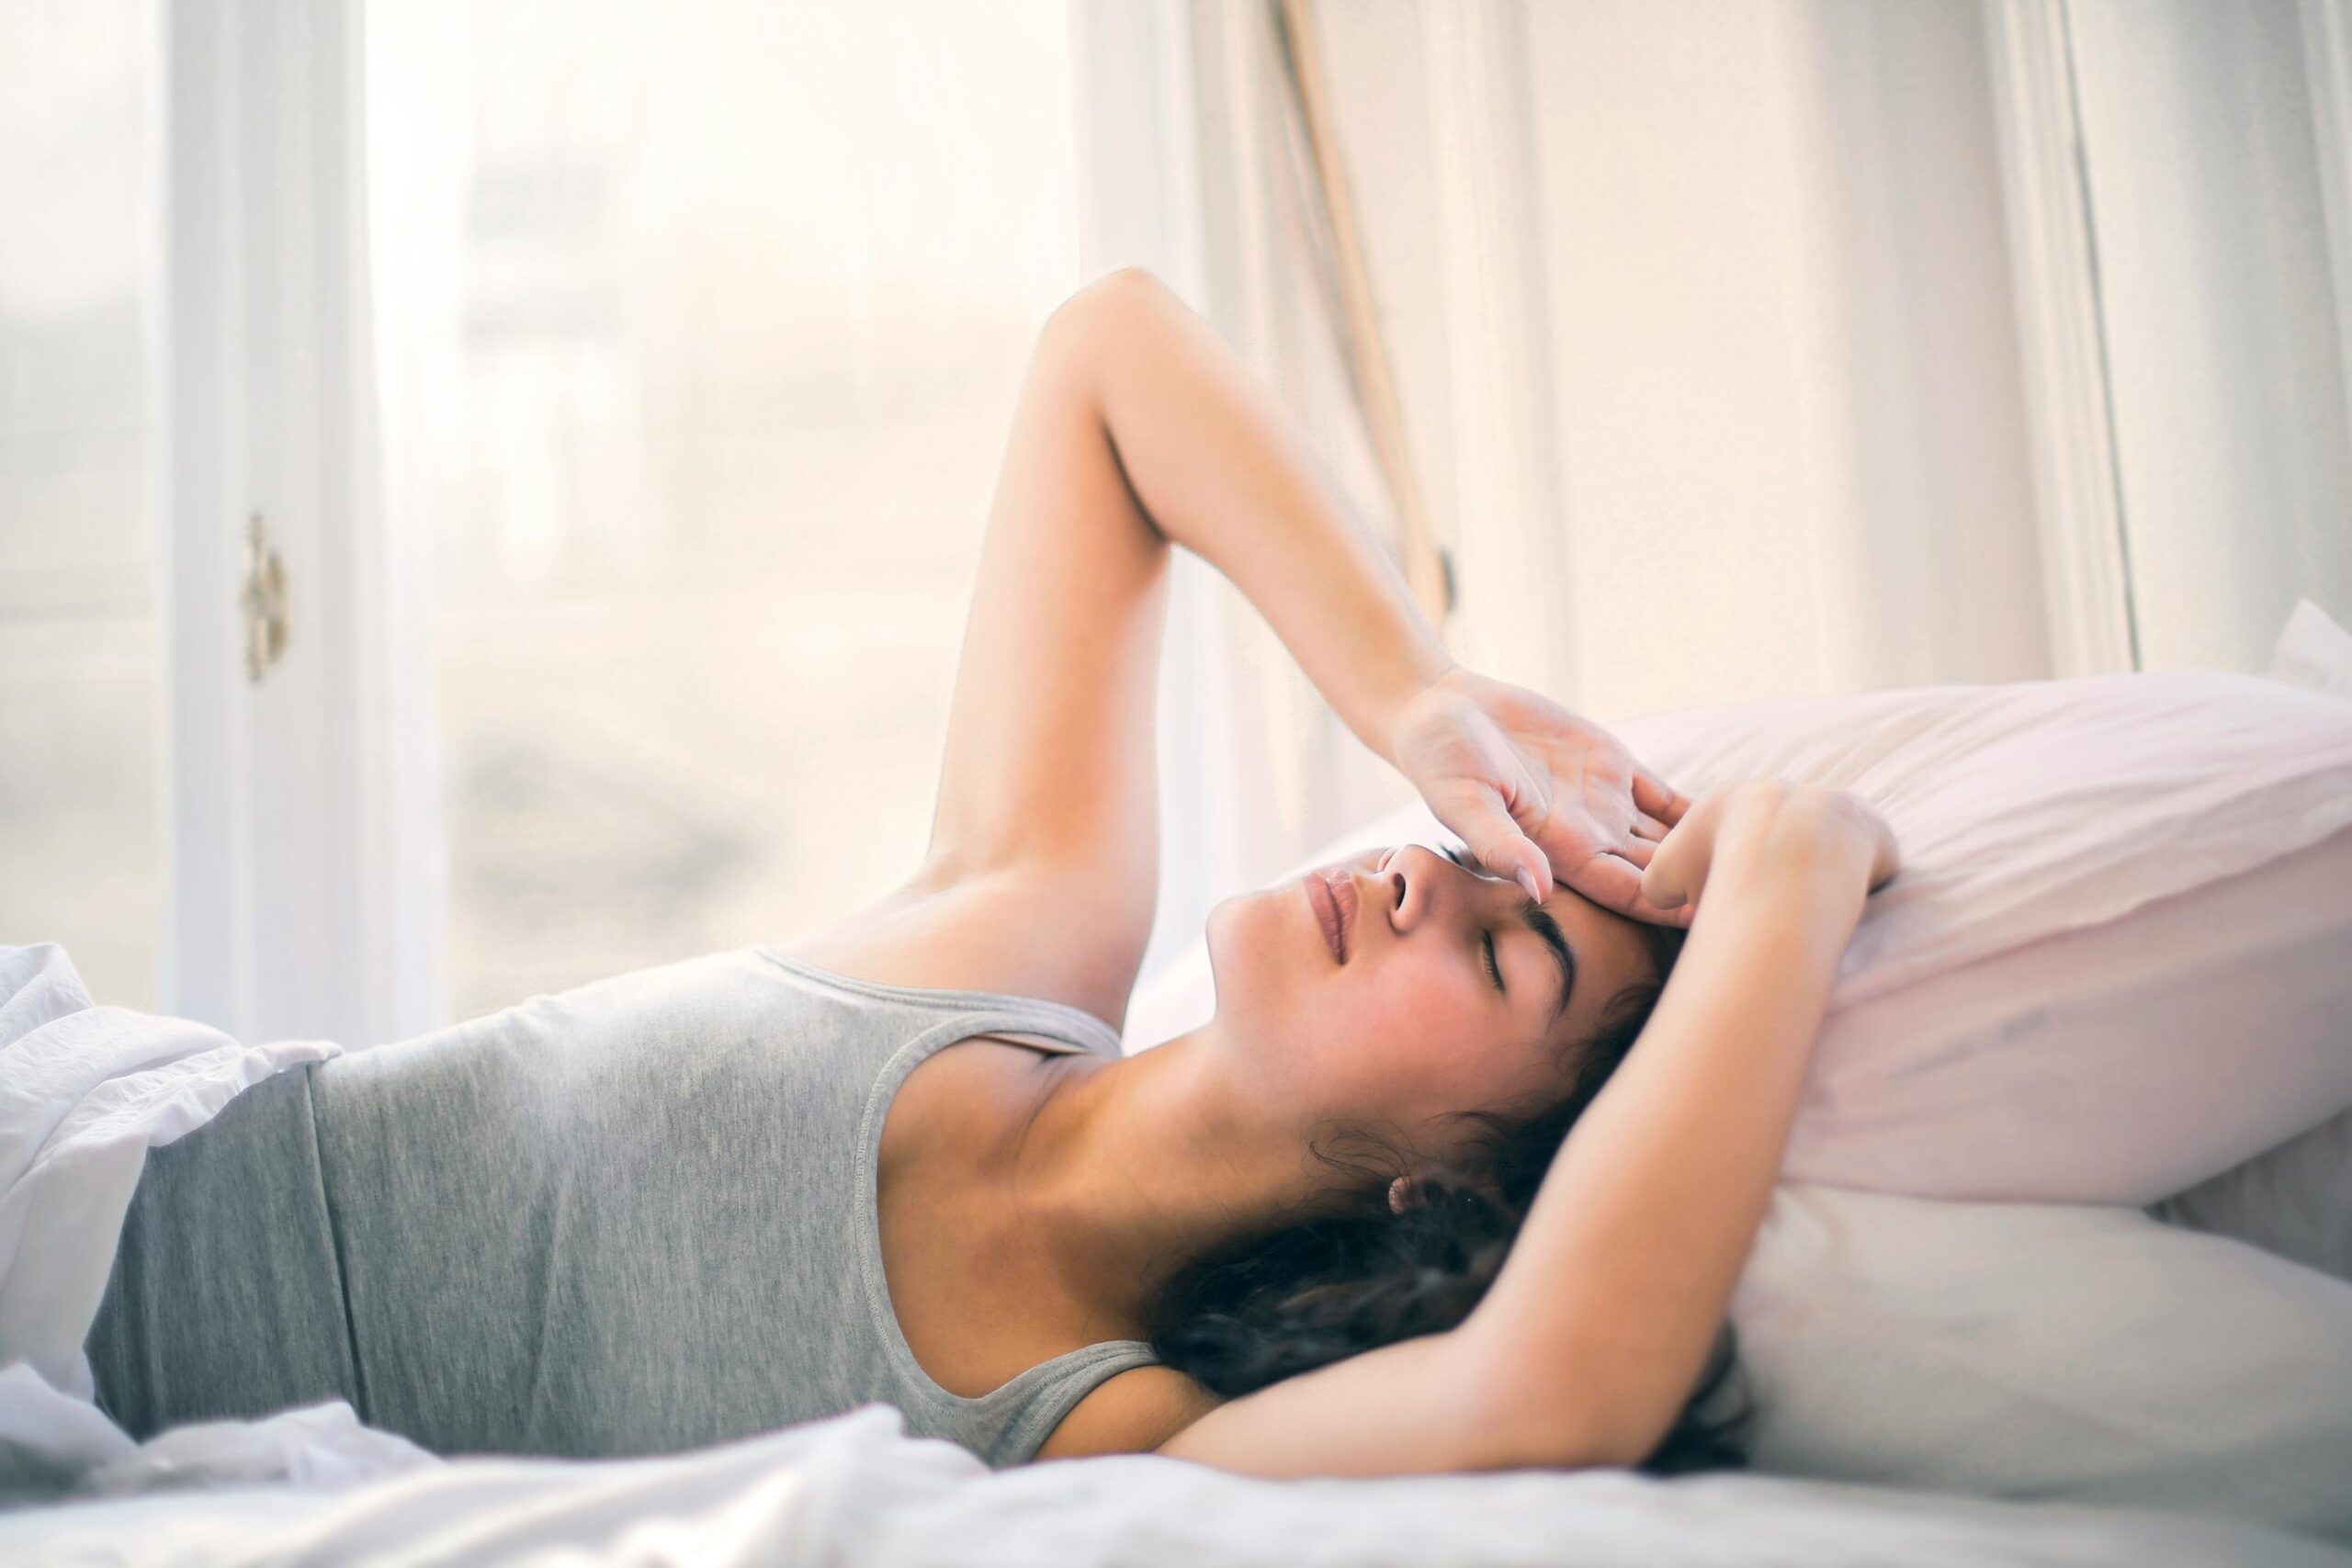 Matratze zu weich Schlafqualität leidet - Rückenschmerzen